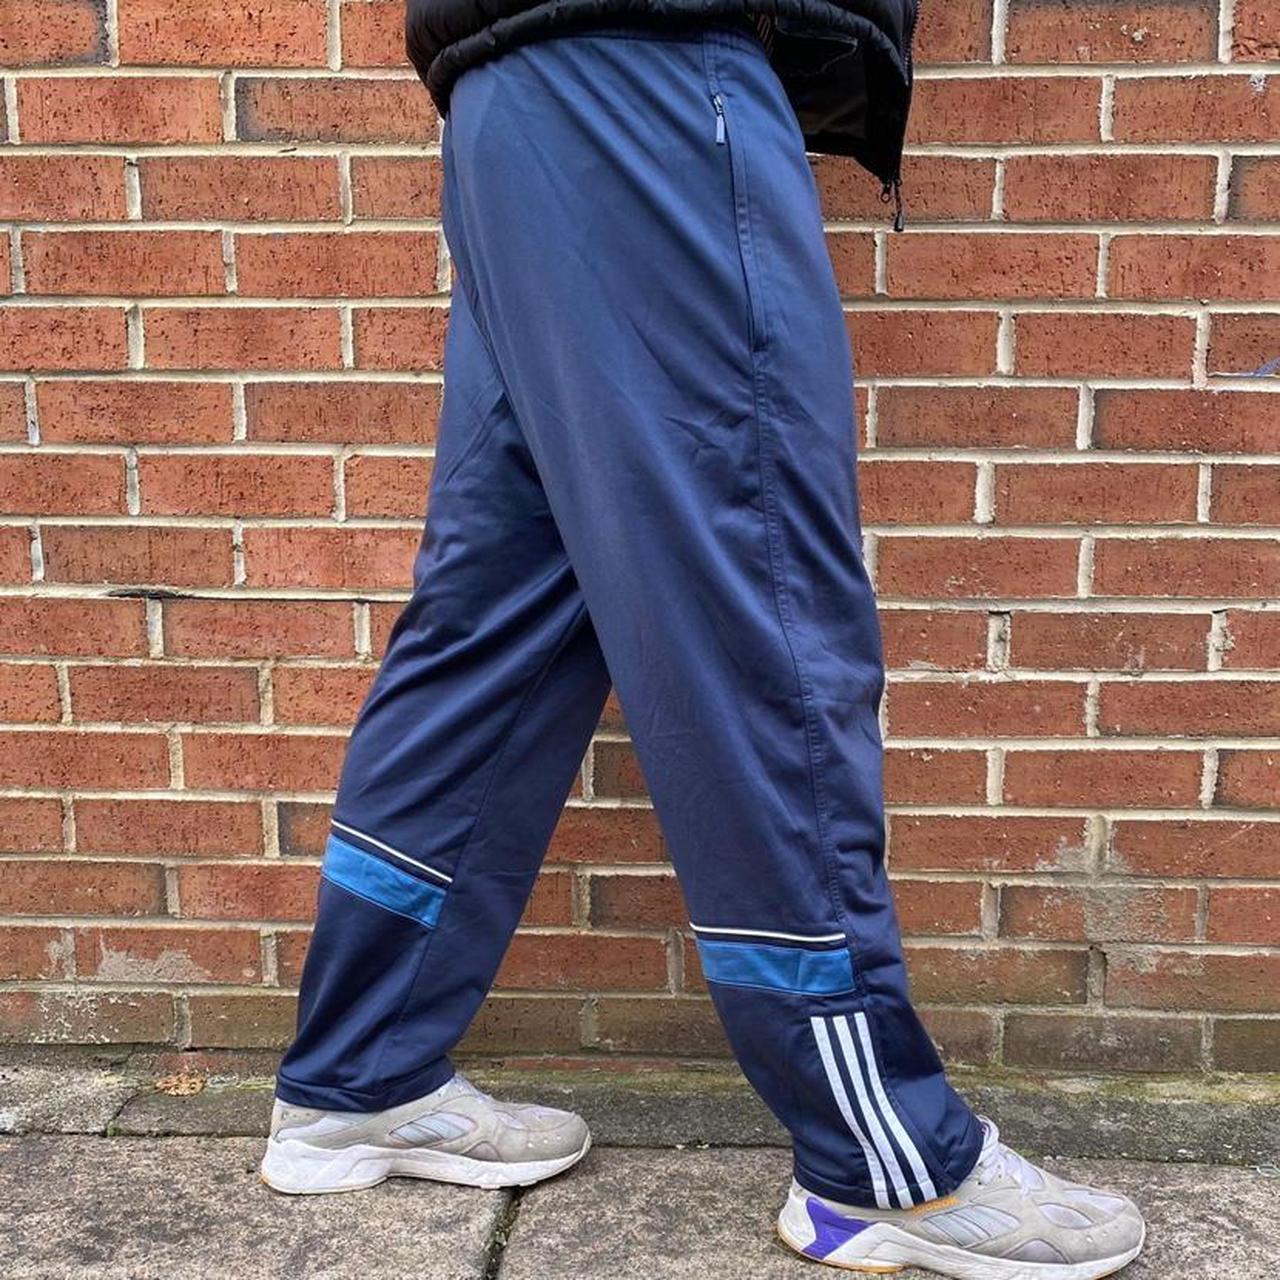 Vintage Adidas 3 Stripes Tracksuit Jogging... - Depop